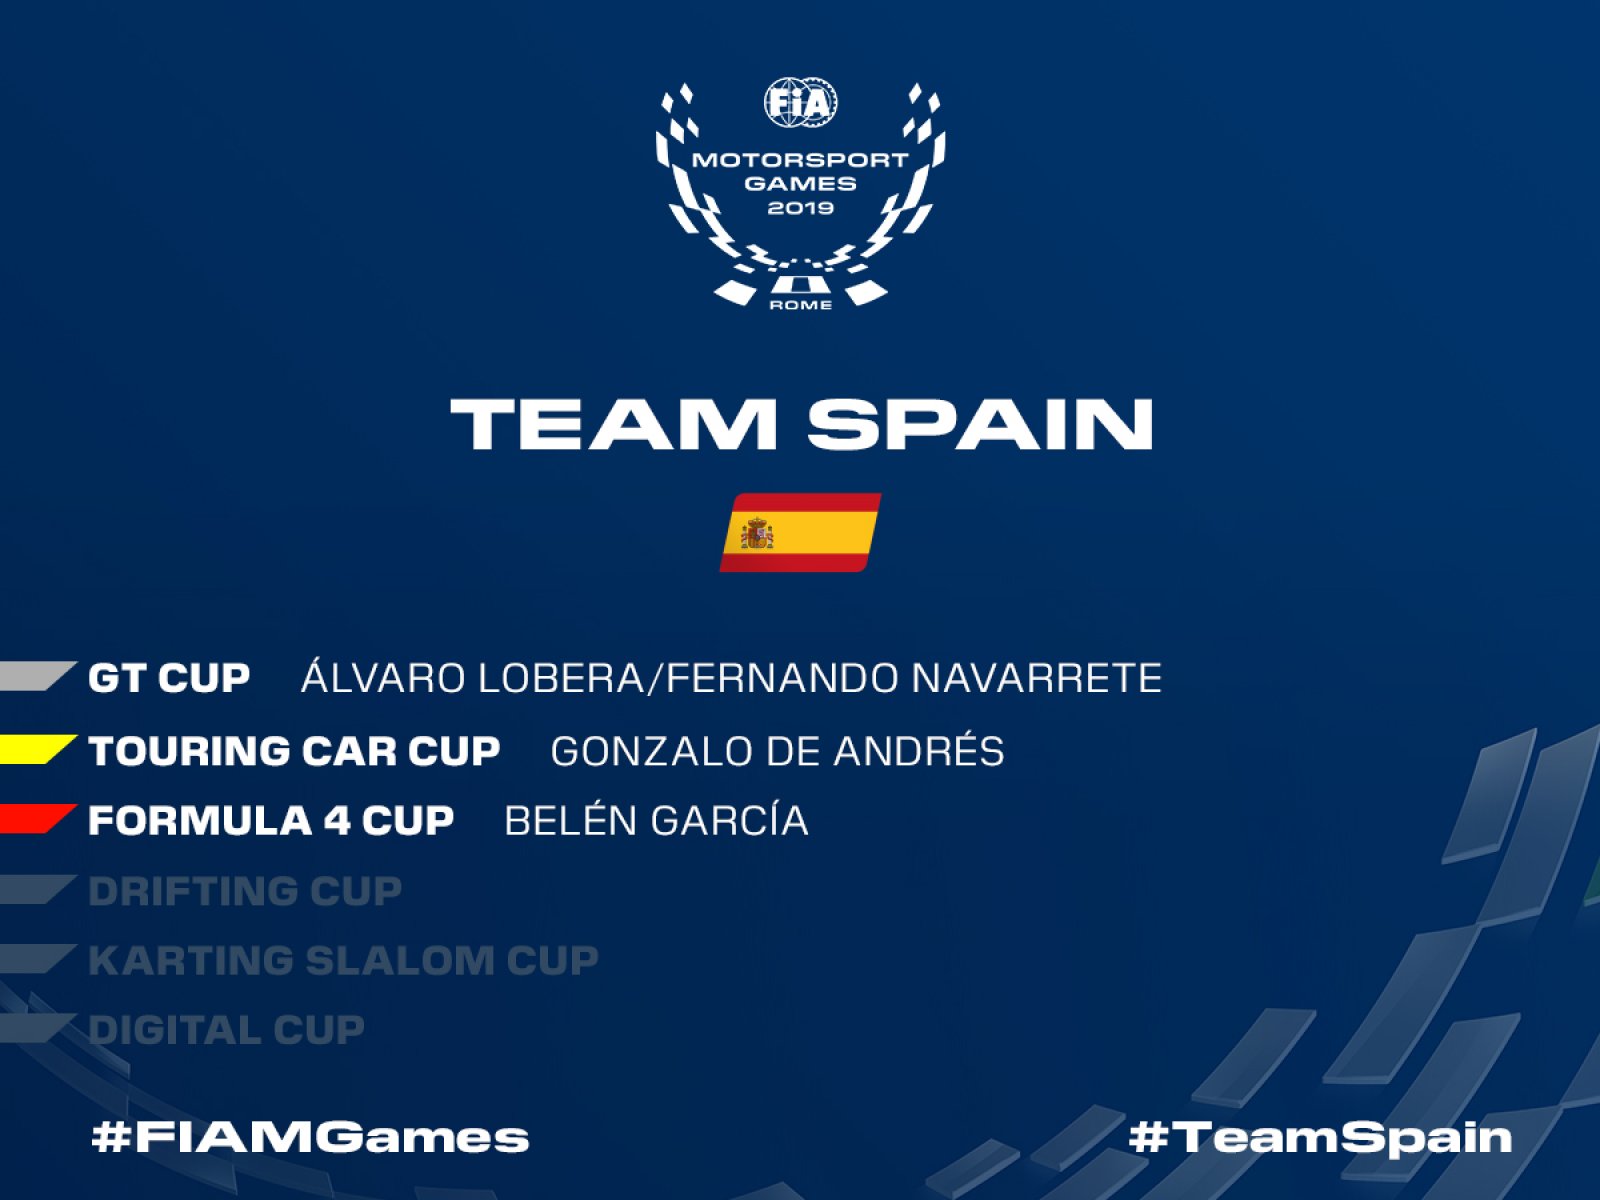 Il Team Spain ha rivelato la propria selezione di piloti per l’edizione inaugurale dei FIA Motorsport Games.